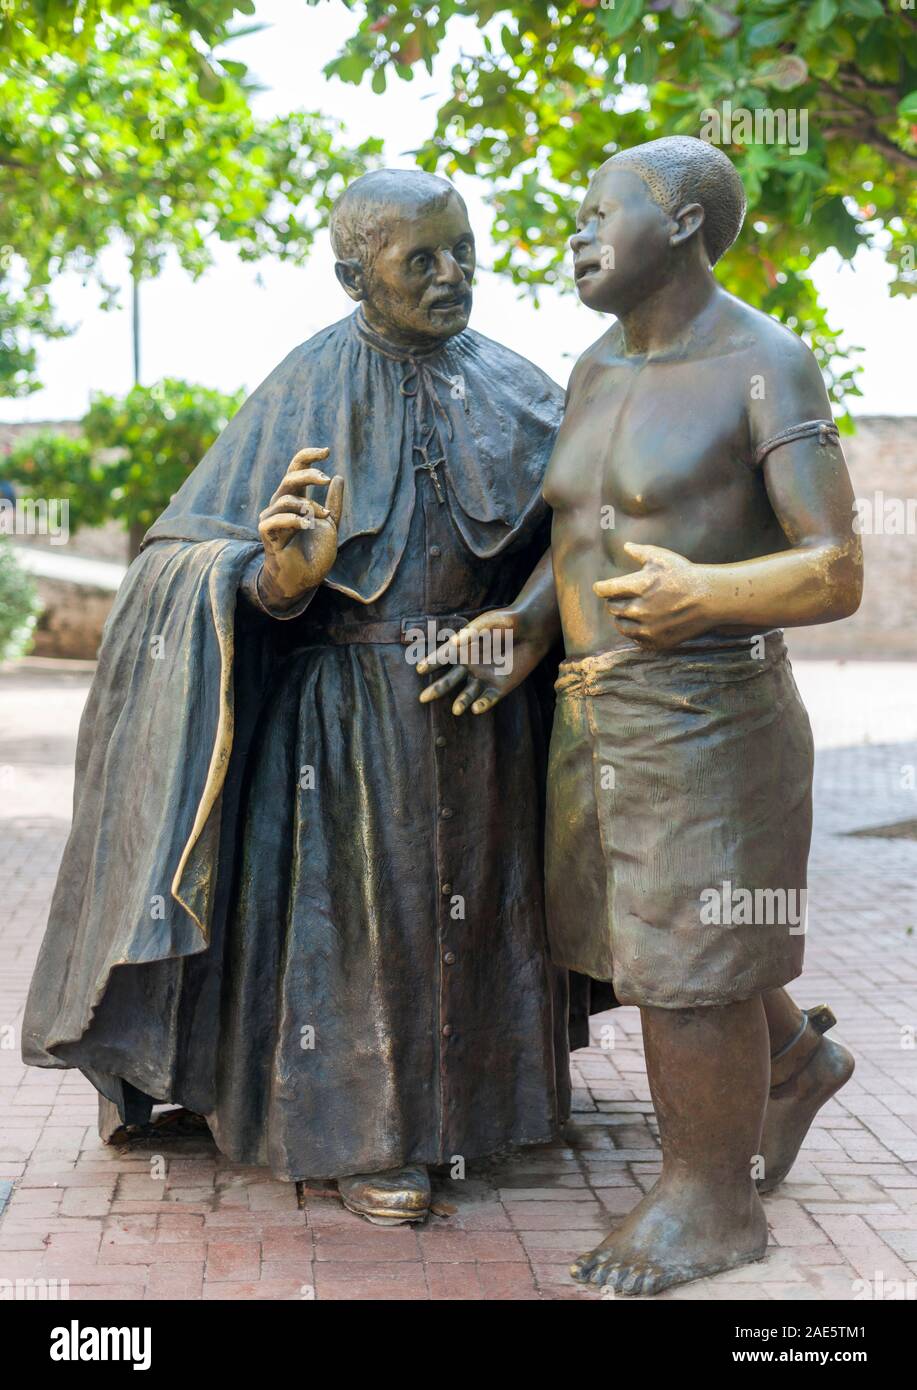 Sculpture de San Pedro Claver dans la vieille ville de Cartagena, Colombie. Banque D'Images